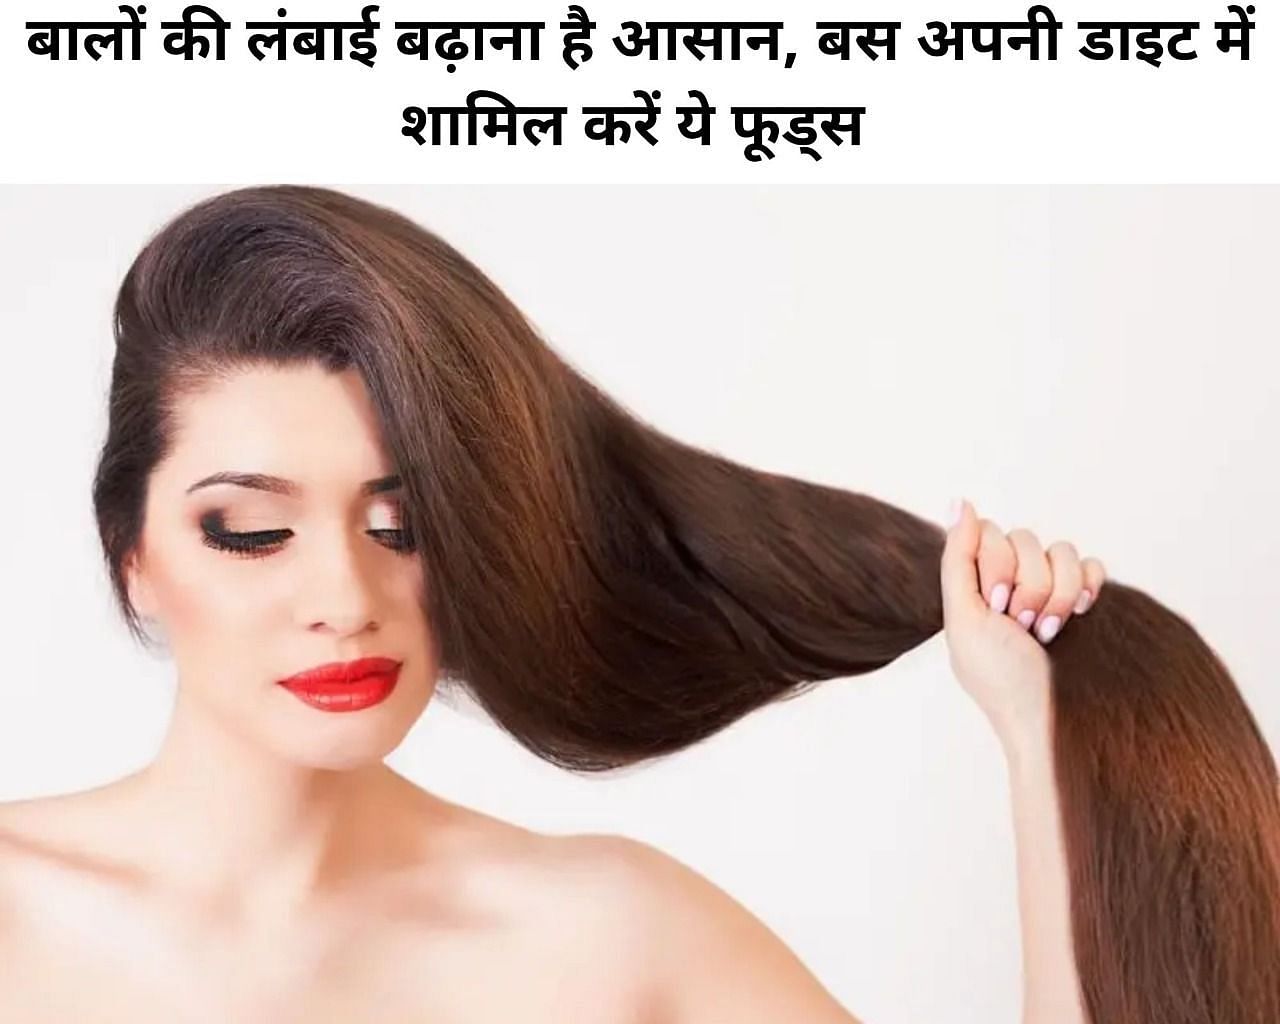 बालों की लंबाई बढ़ाना है आसान, बस अपनी डाइट में शामिल करें ये 7 फूड्स -  Foods To Increase Hair Growth In Hindi